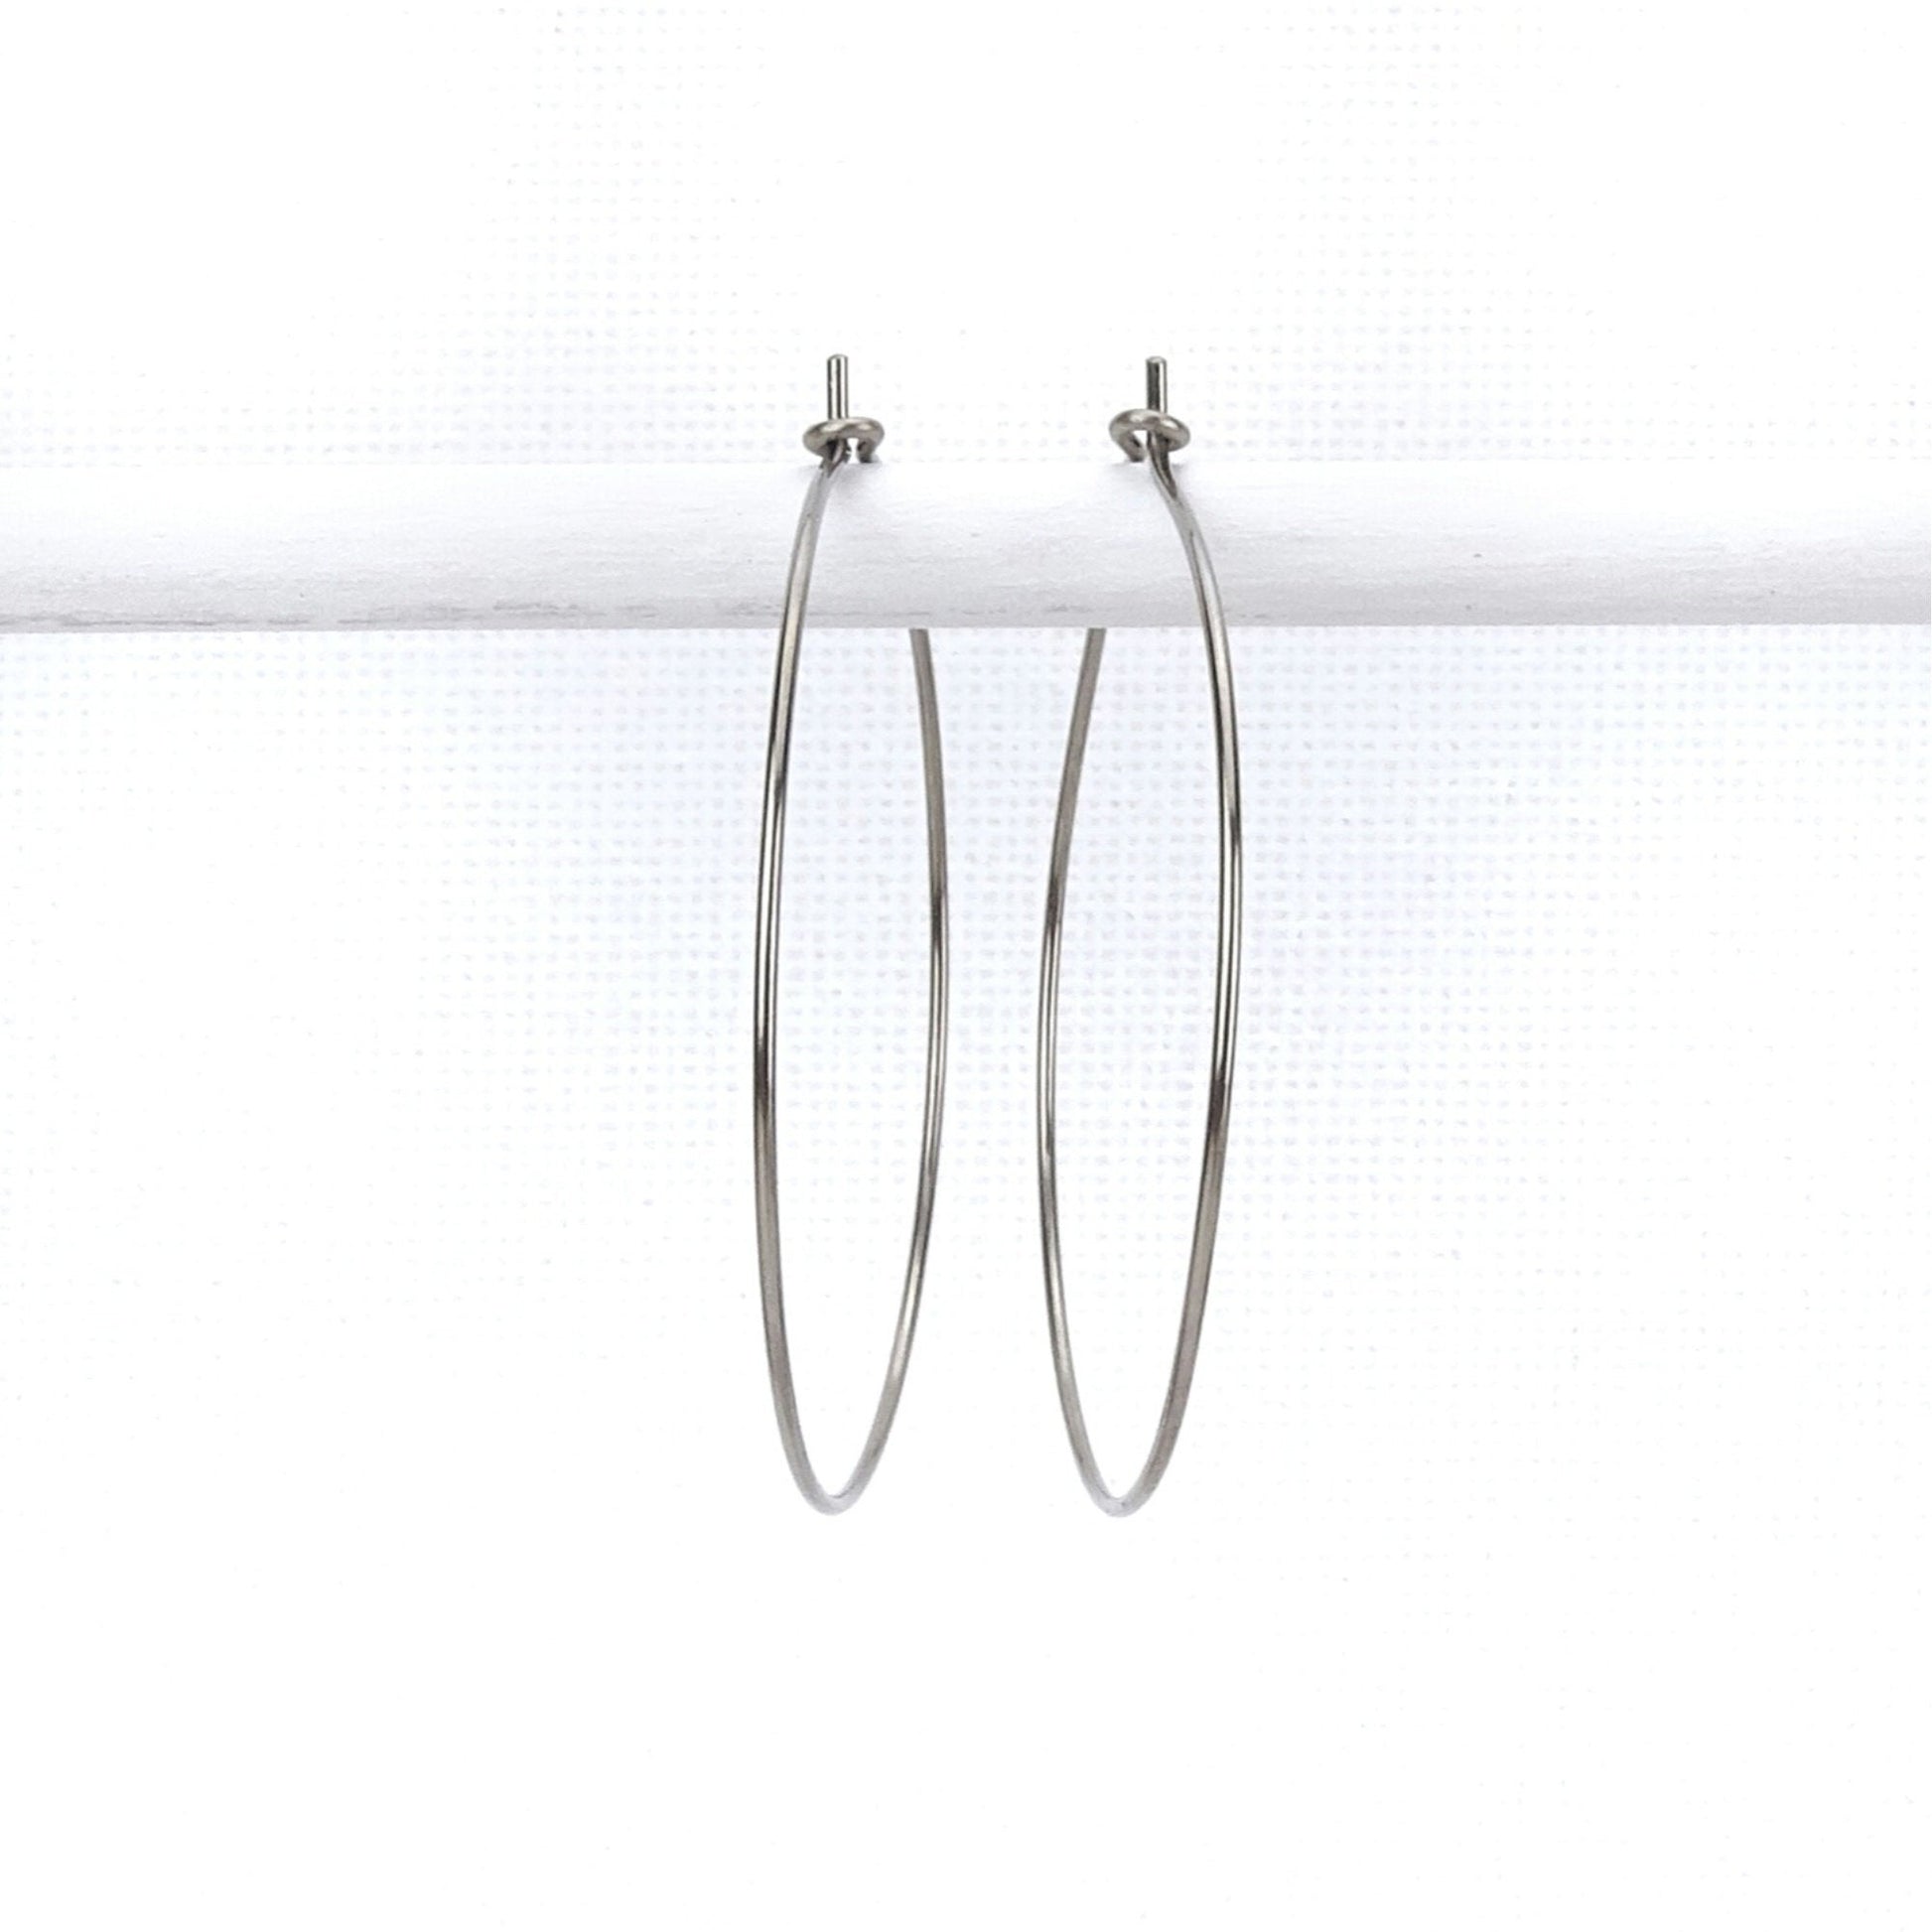 Niobium Hoop Earrings Extra Large, 1.5 Inch Hoops Earring, Hypoallergenic Hoops for Sensitive Ears, Silver Color Nickel Free Jewellery